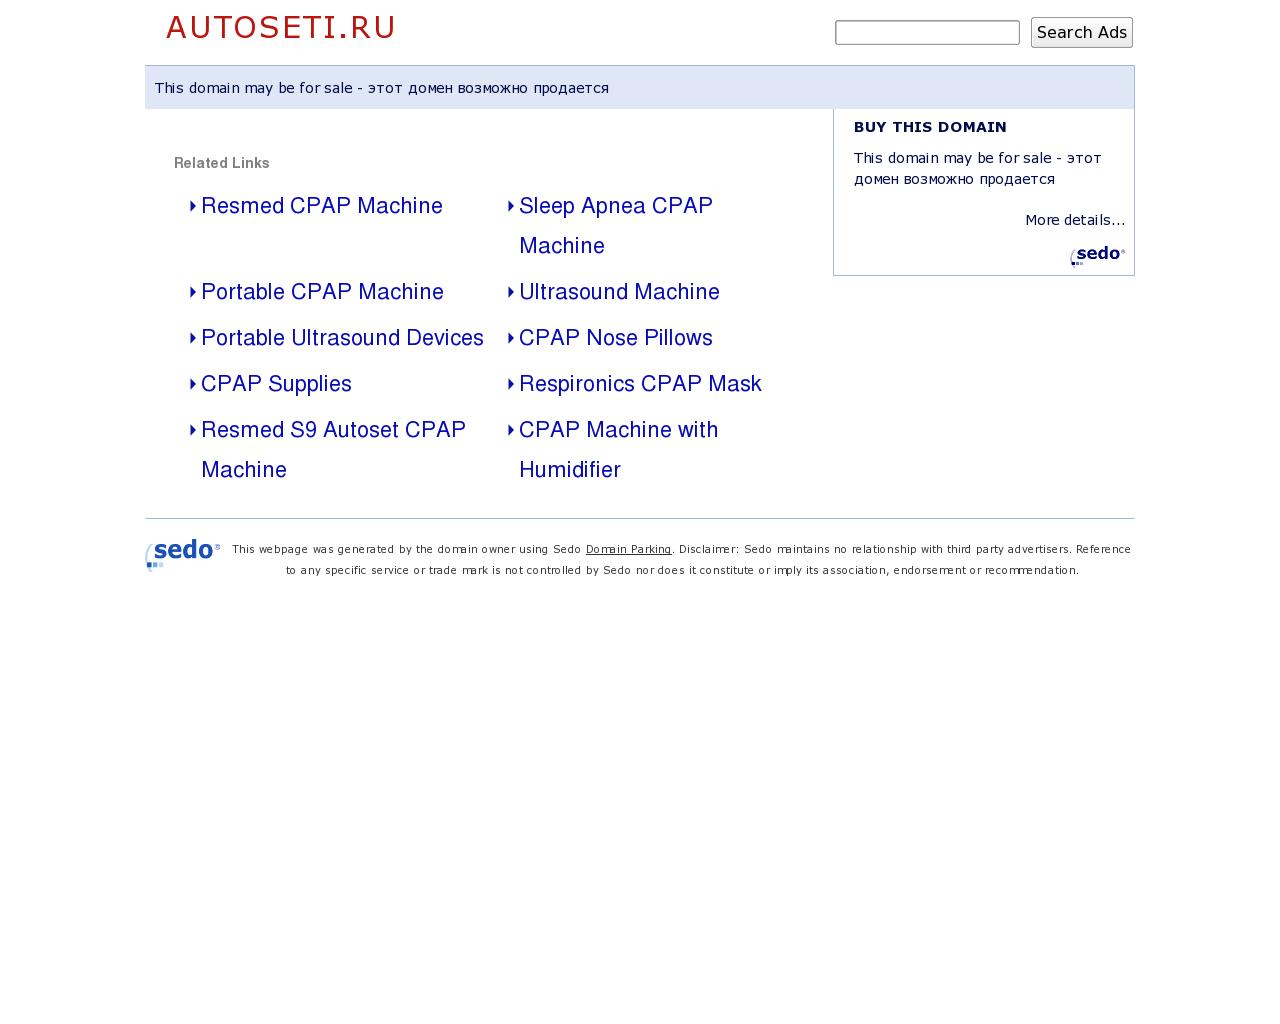 Изображение сайта autoseti.ru в разрешении 1280x1024